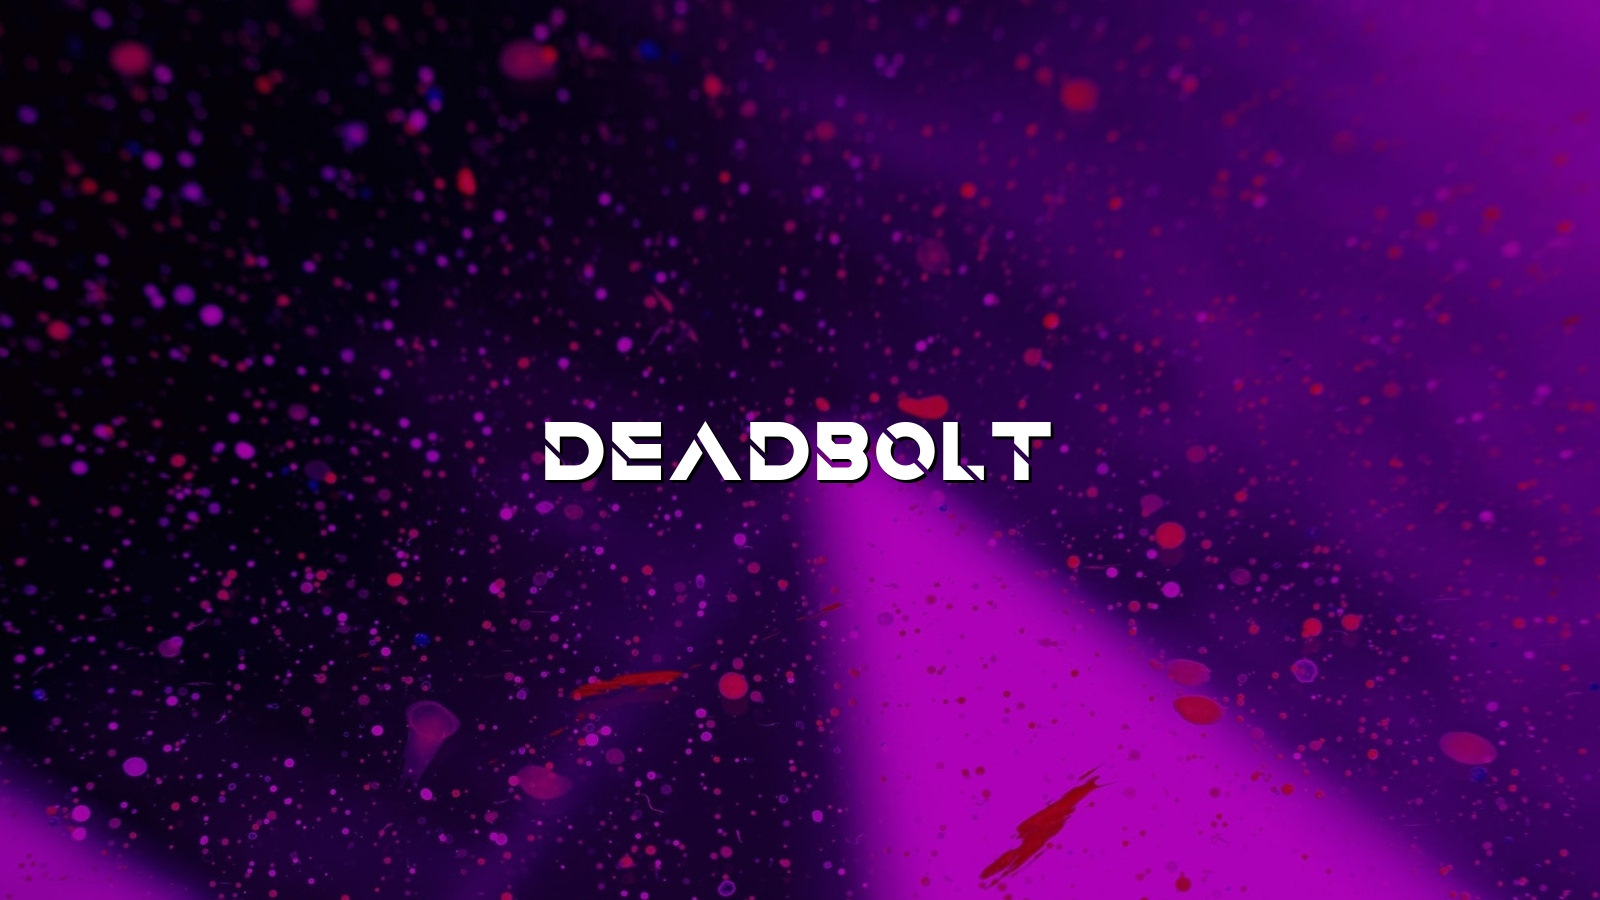 DeadBolt ransomware